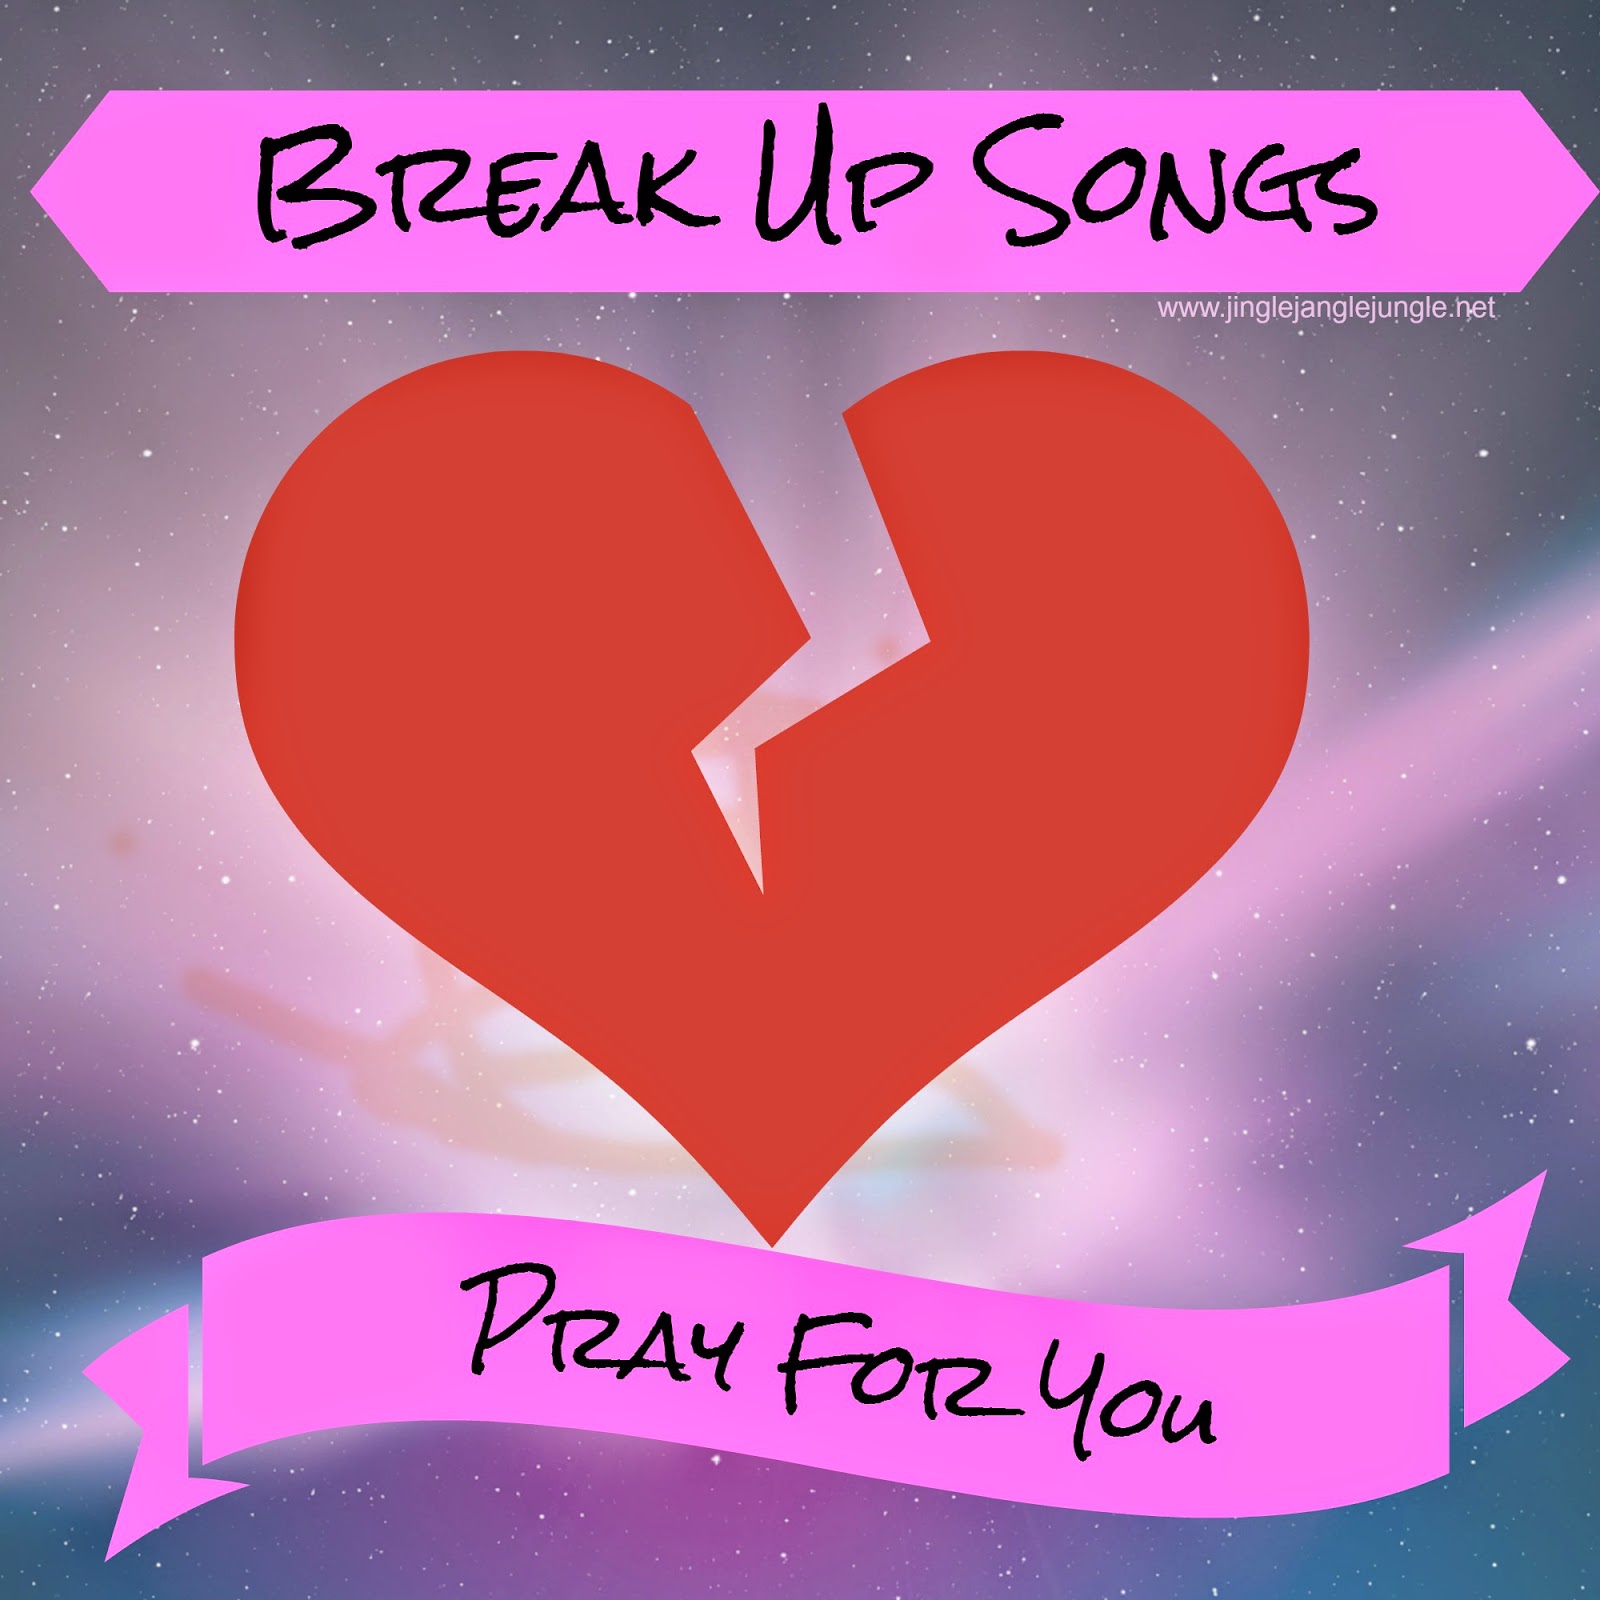 Break Up Songs: Pray For You http://www.jinglejanglejungle.net/2015/02/break-up-pray.html #BreakUpSongs